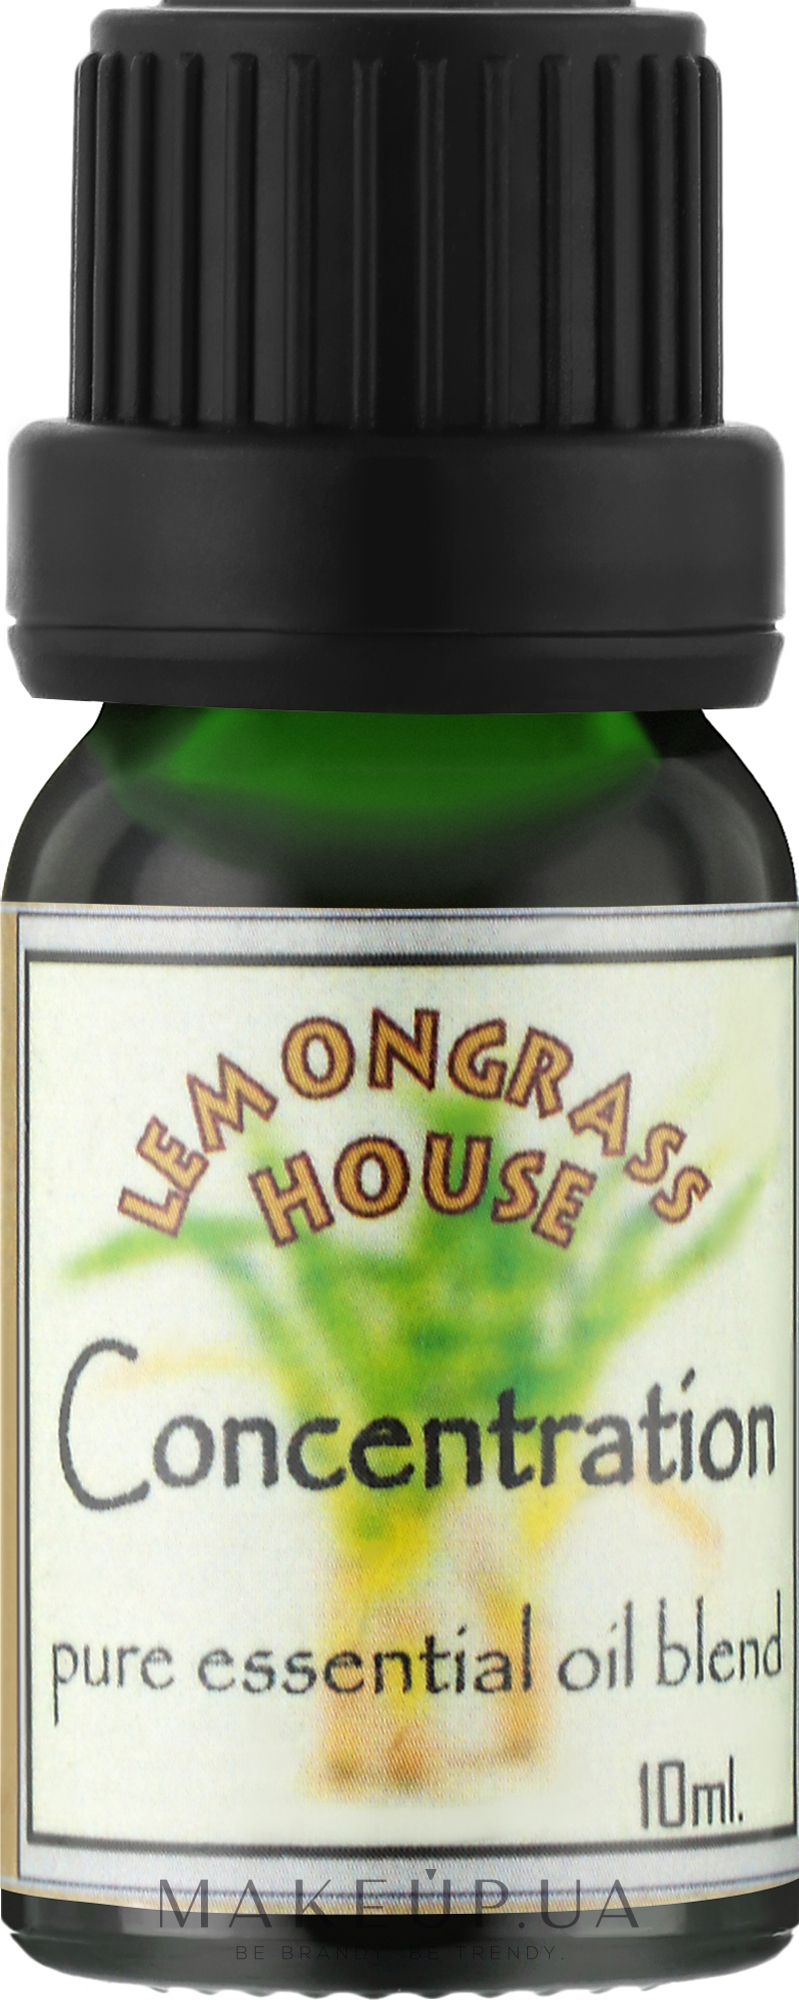 Смесь эфирных масел "Концентрация внимания" - Lemongrass House Concentration Pure Essential Oil — фото 10ml